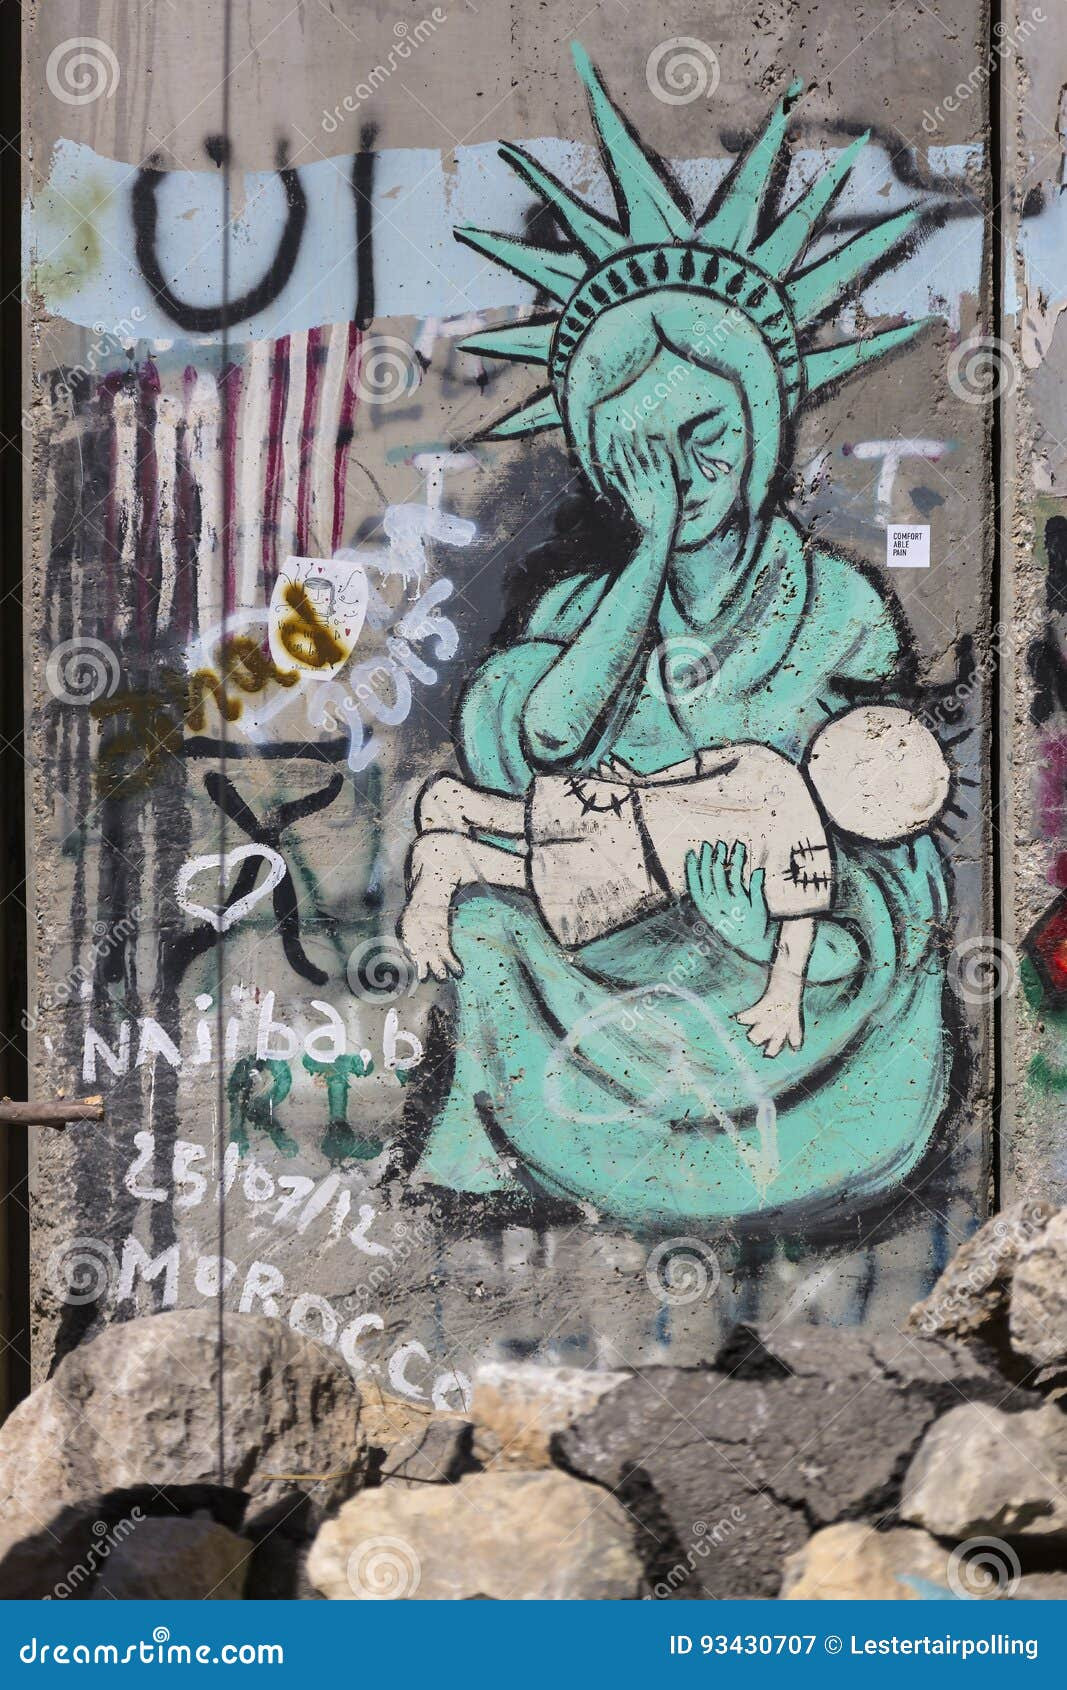 λεπτομέρεια-των-γκράφιτι-στο-εμπό-ιο-χωρισμού-μεταξύ-της-πα-αιστίνης-93430707.jpg